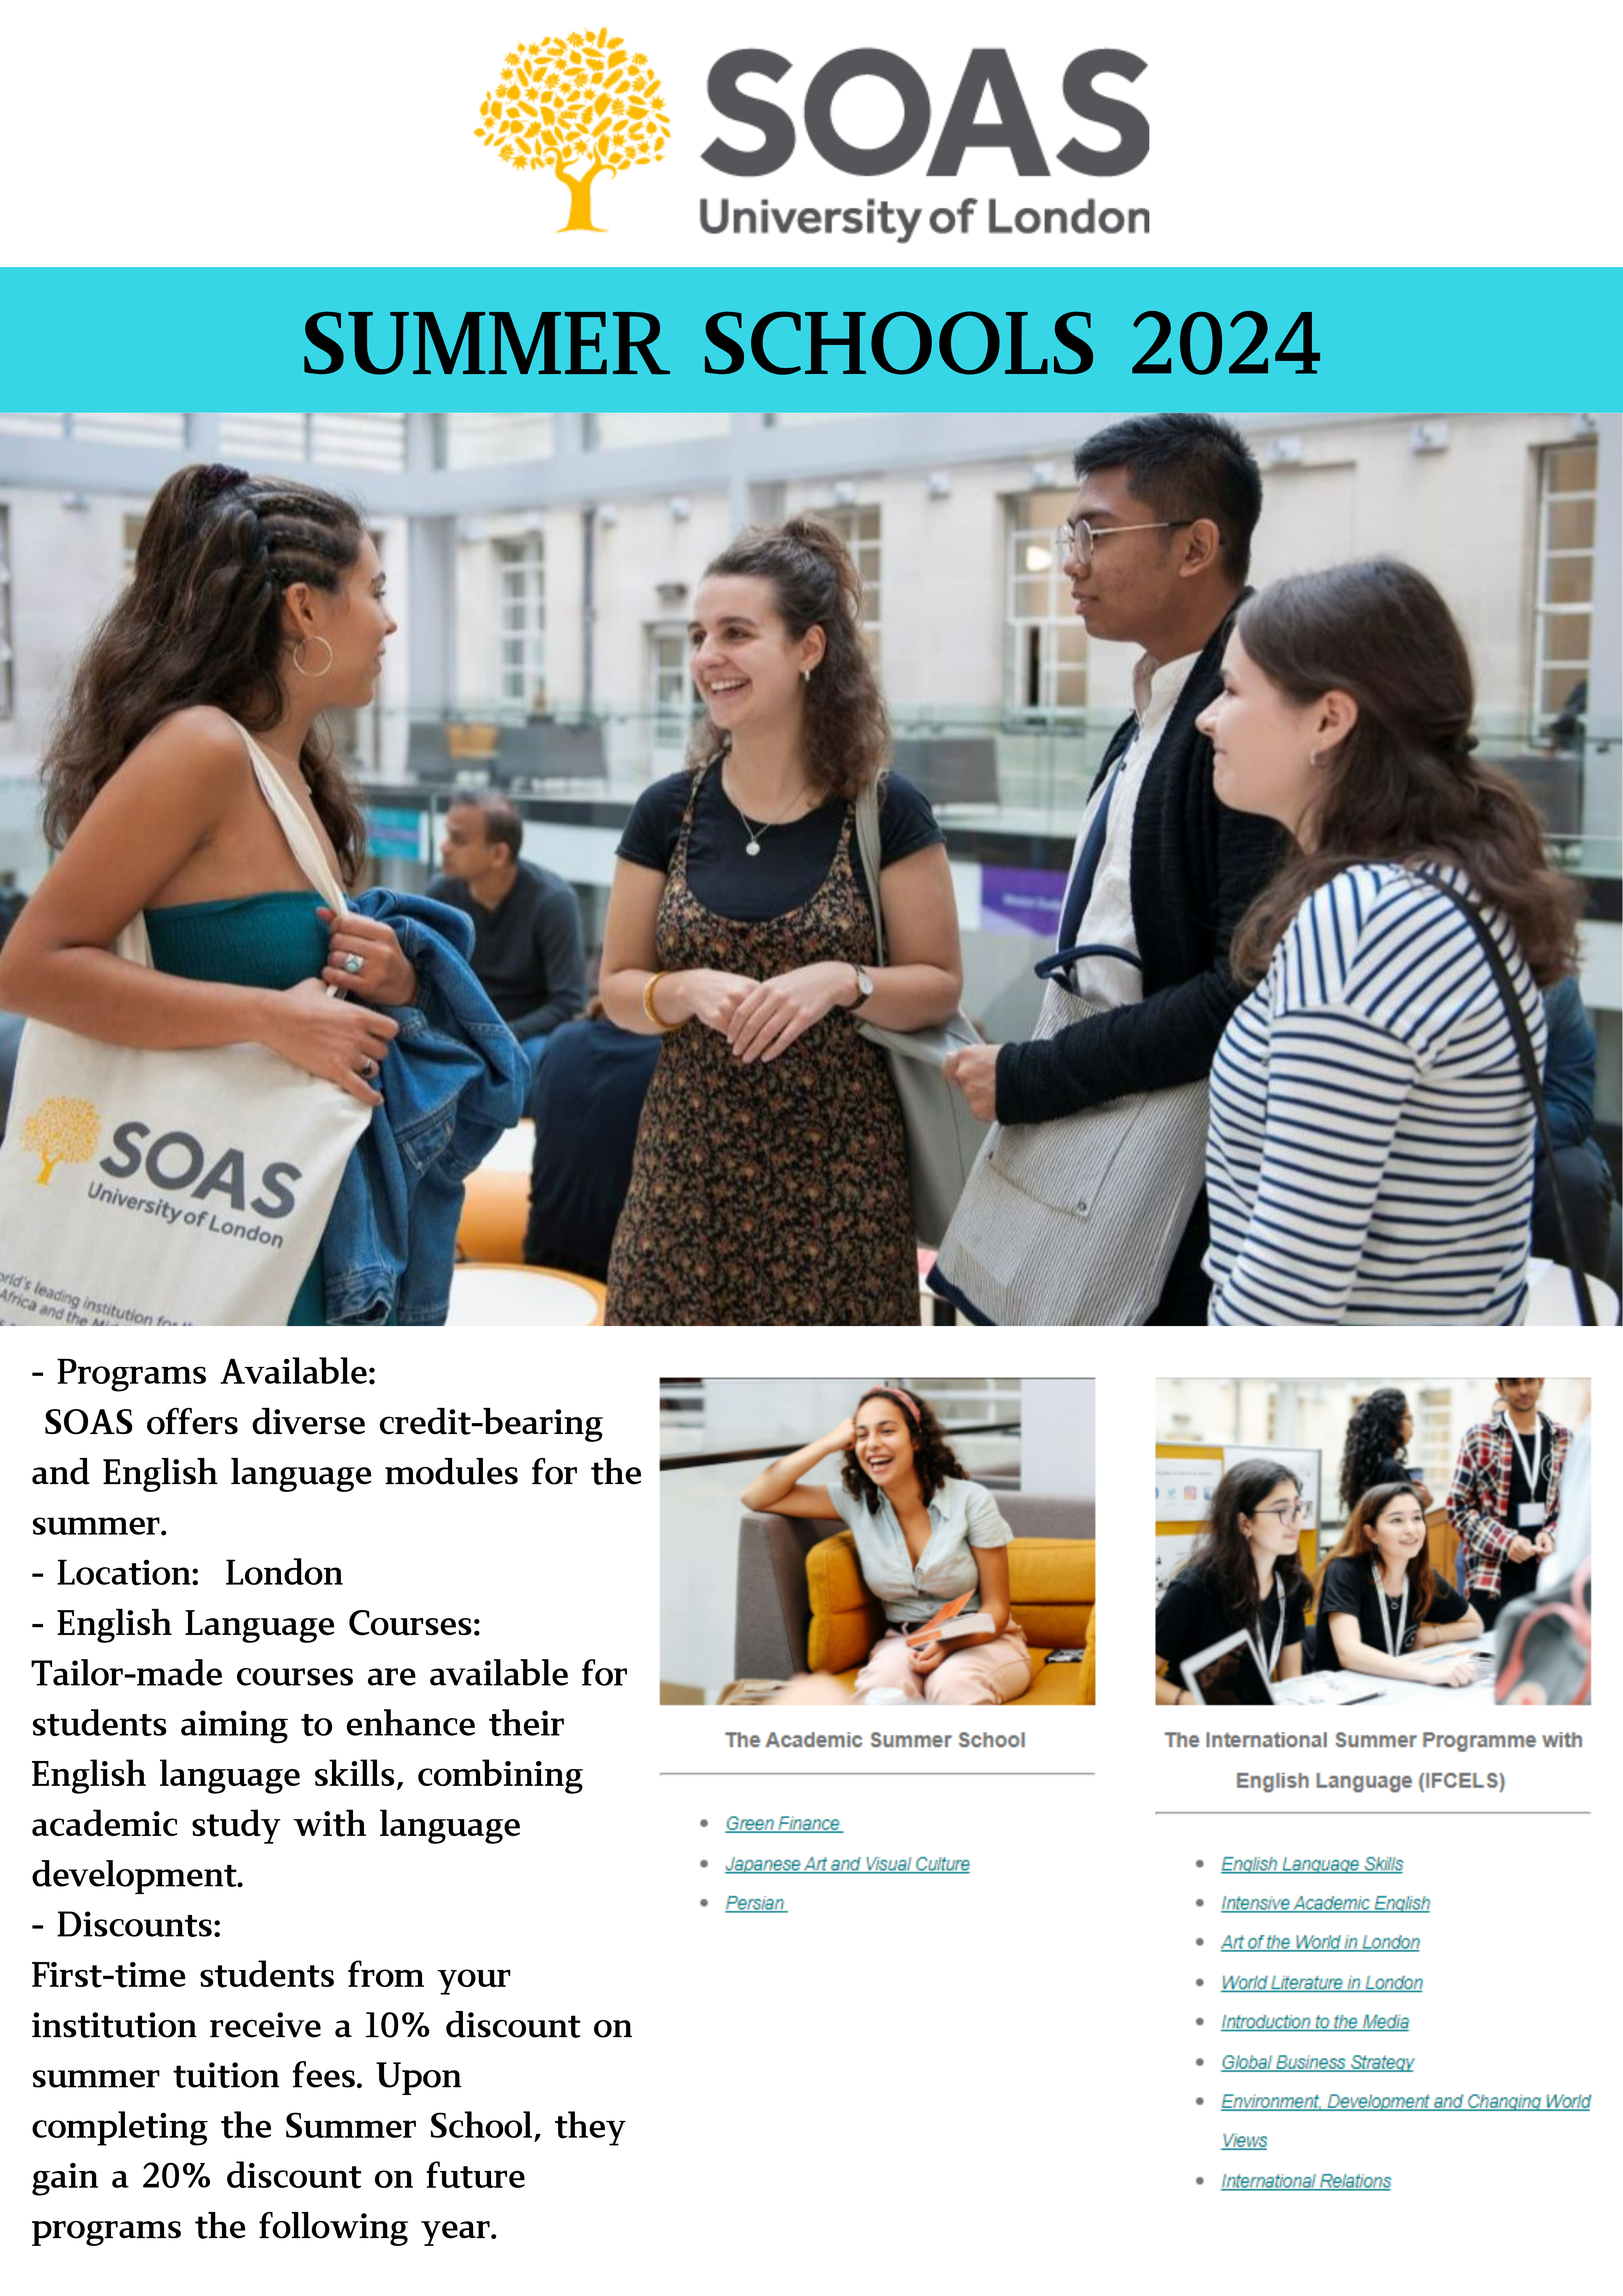 [홍보] SOAS University of London Summer Schools 2024 🌞 접수